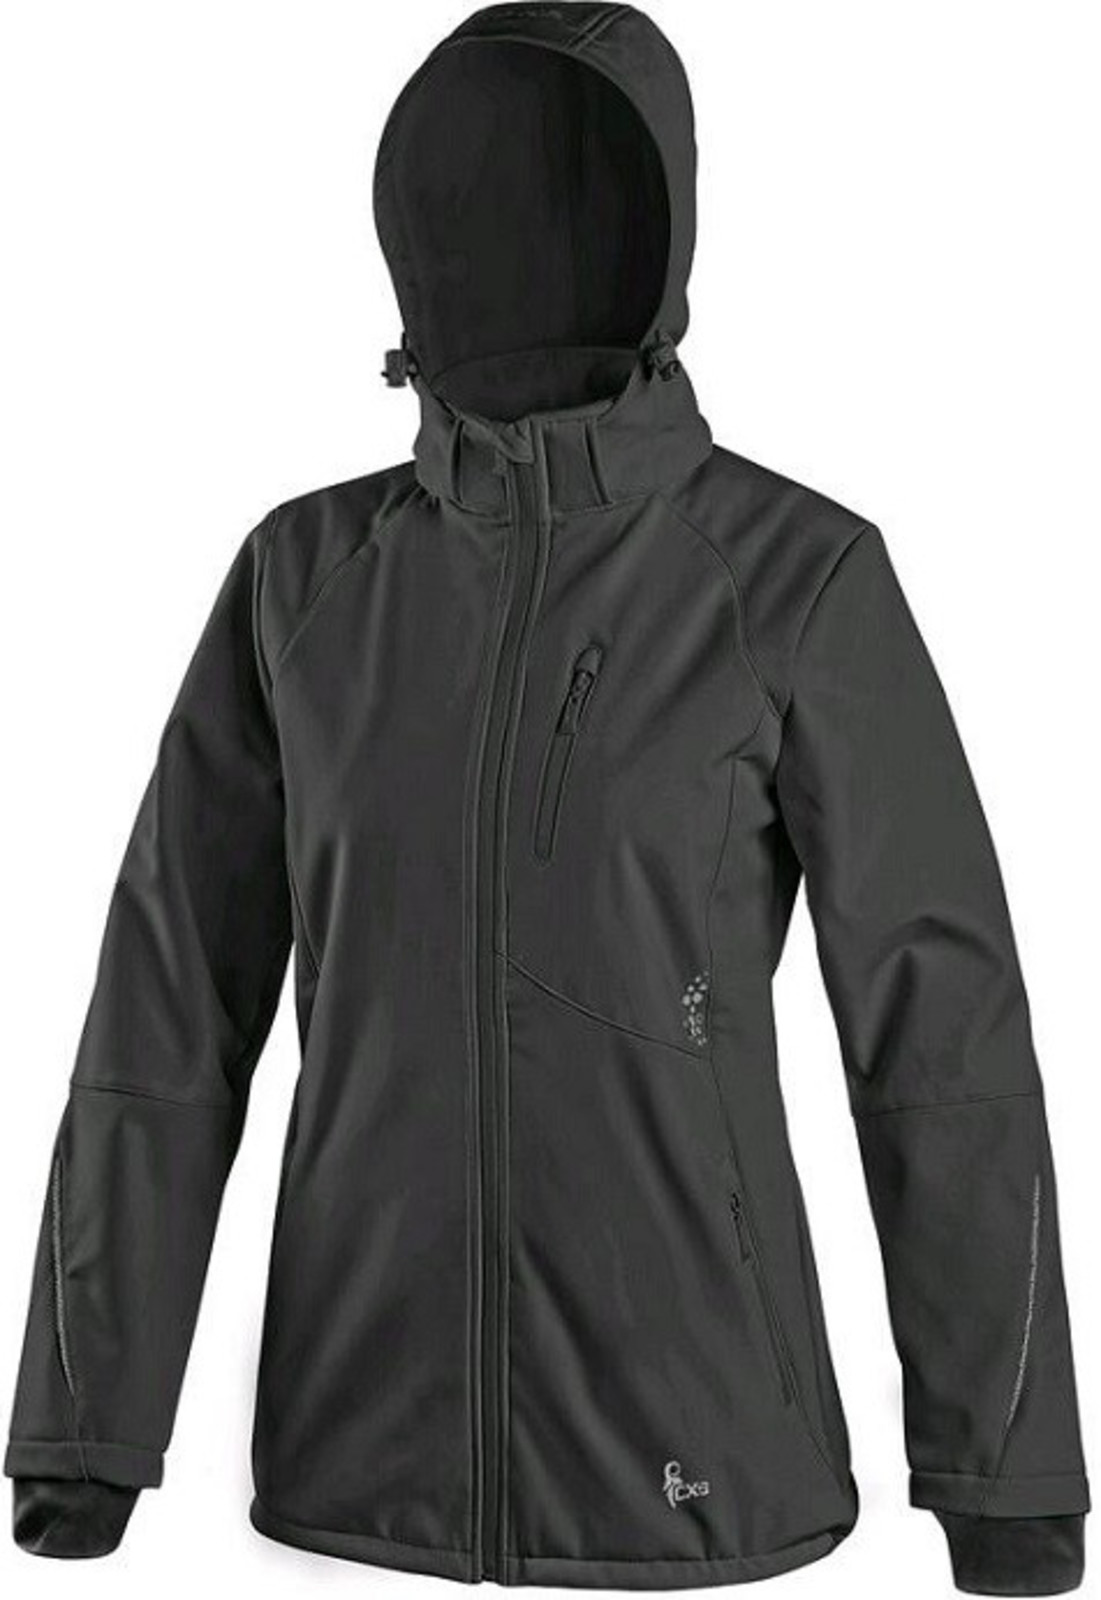 Softshellová bunda CXS Nevada dámska - veľkosť: M, farba: čierna